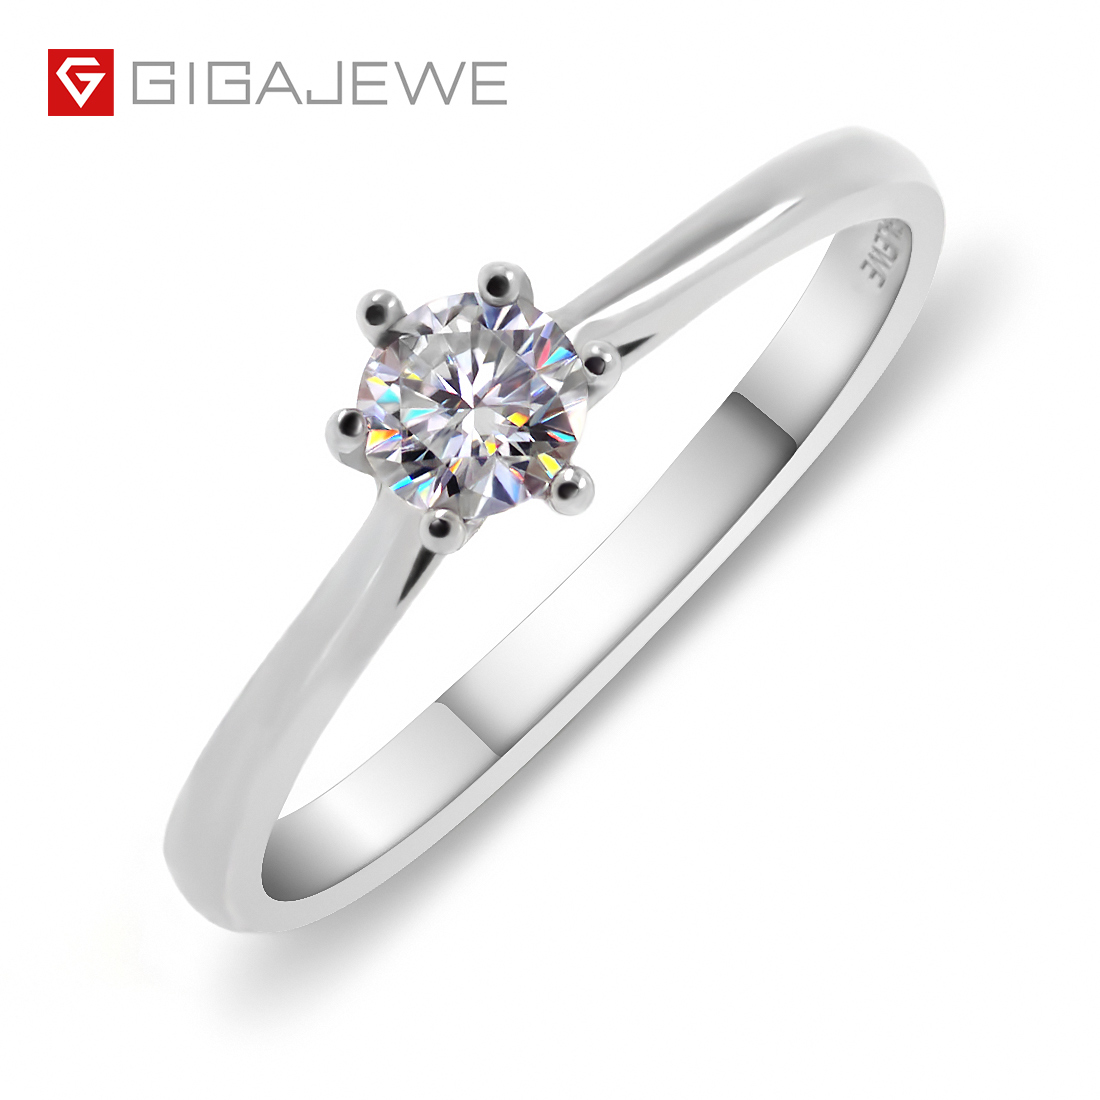 GIGAJEWE 0.3 克拉 4 毫米圆形切割 EF VVS1 莫桑石 925 银戒指钻石测试通过时尚女朋友女士礼物